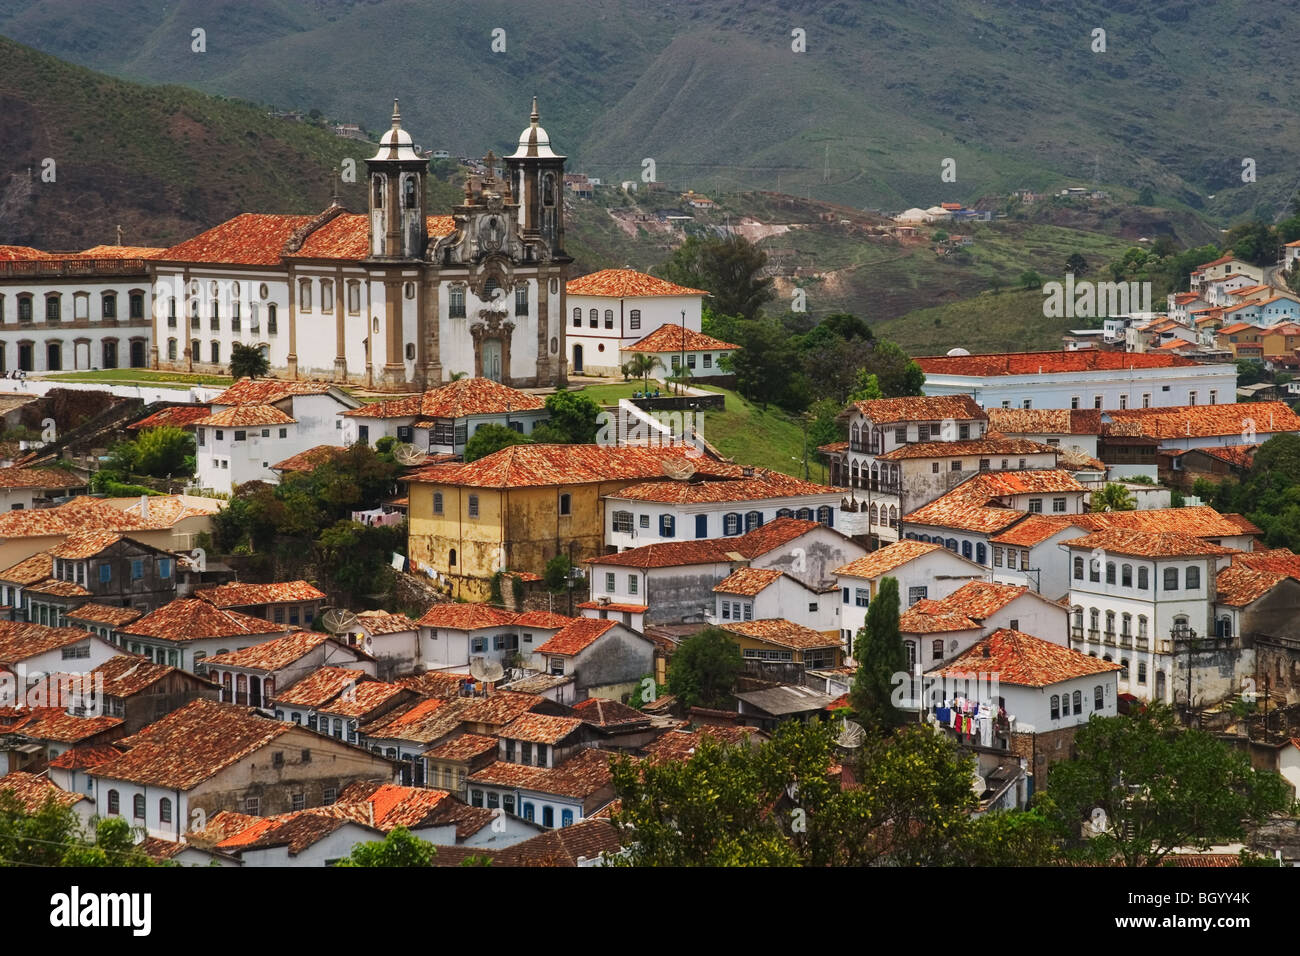 Baroque church of Nossa Senhora do Carmo in Ouro Preto. Located in the state of Minas Gerais, Brazil Stock Photo